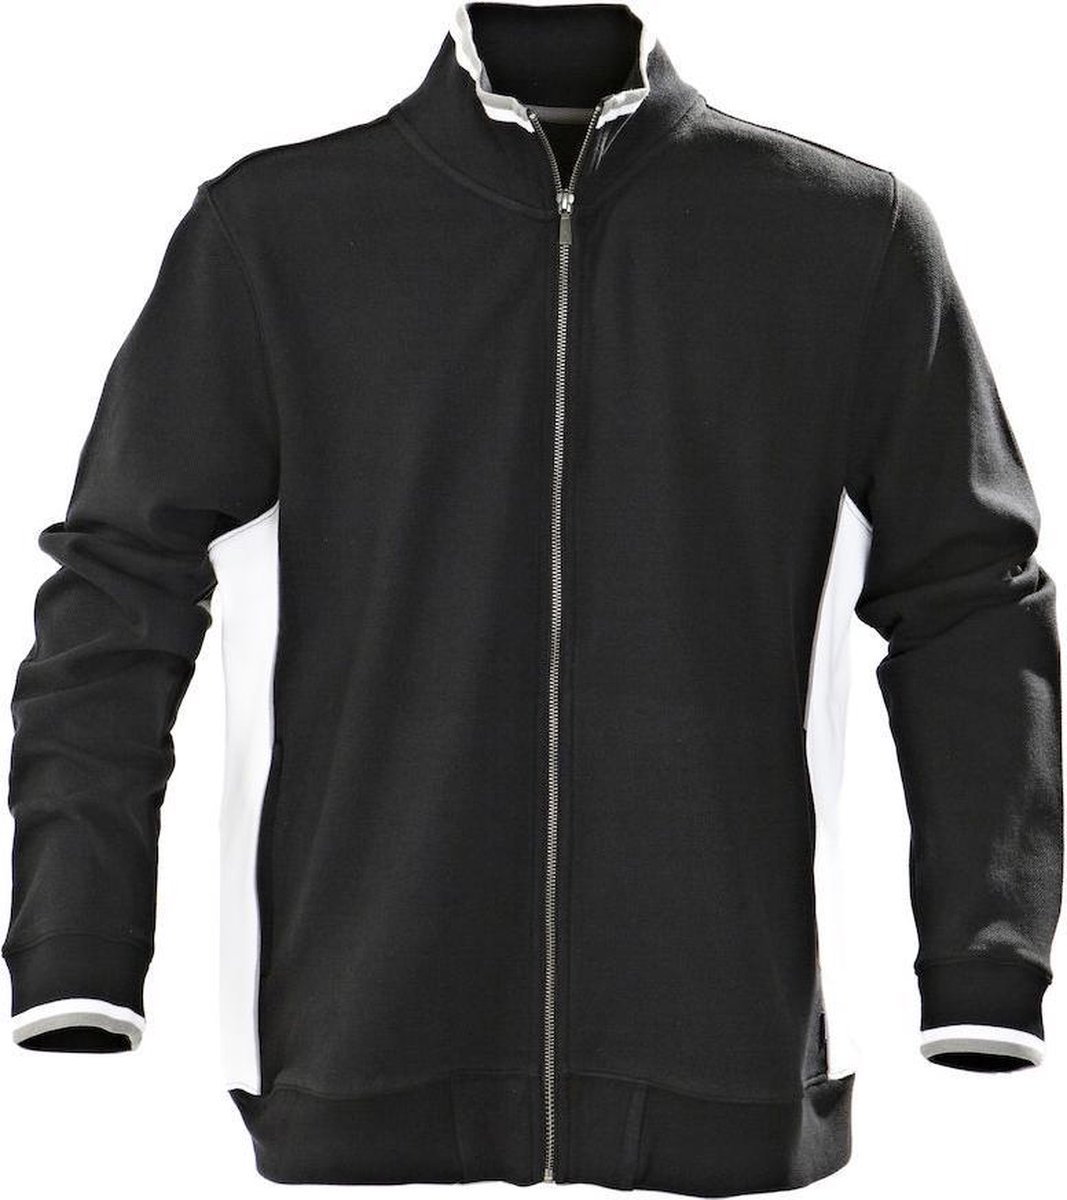 Harvest Atlanta Piqué Jacket Vest Zwart 2132018 - Maat XXL